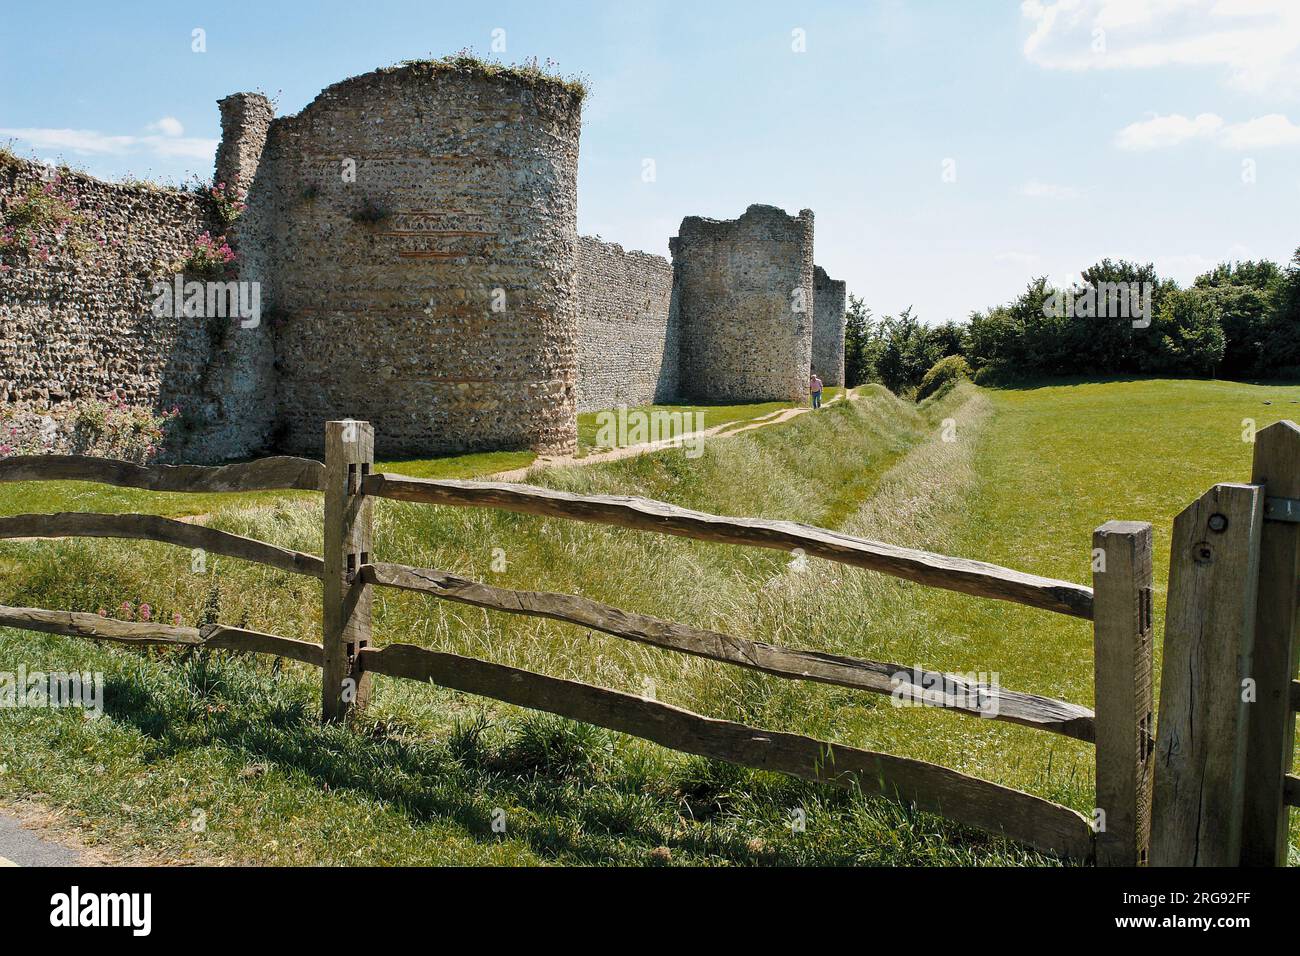 Parte delle mura del castello di Portchester, vicino a Portsmouth, Hampshire. Costruito come forte romano alla fine del III secolo, divenne un castello normanno nel XII secolo, Riccardo II ne trasformò parte in un palazzo nel 1396, e Enrico V partì da qui nel 1415. Foto Stock